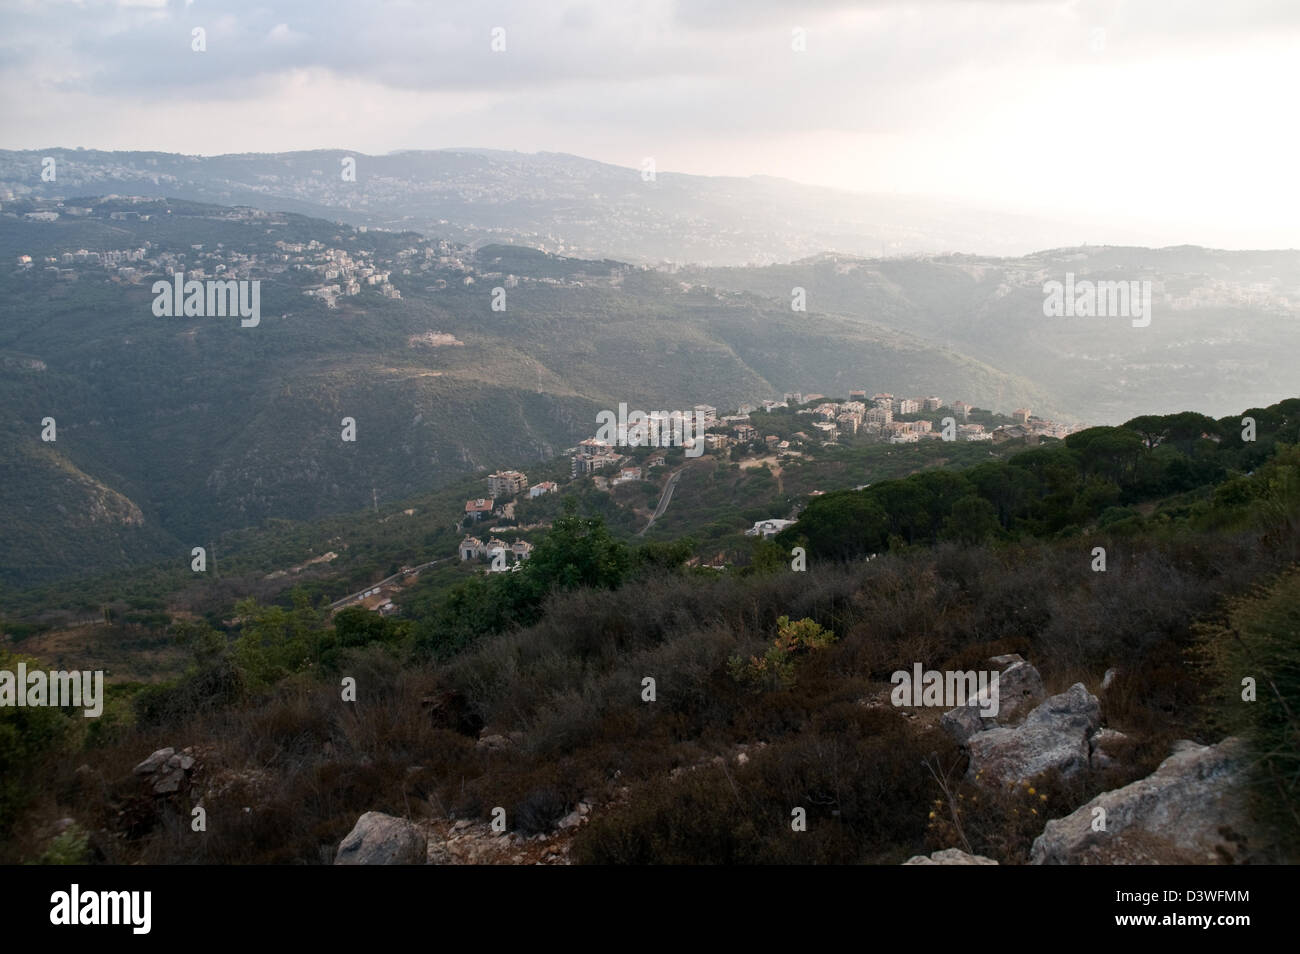 Das Dorf von Montiverdi, wie aus Beit Meri in der christlichen Mount Lebanon Region nördlich von Beirut, Libanon. Stockfoto